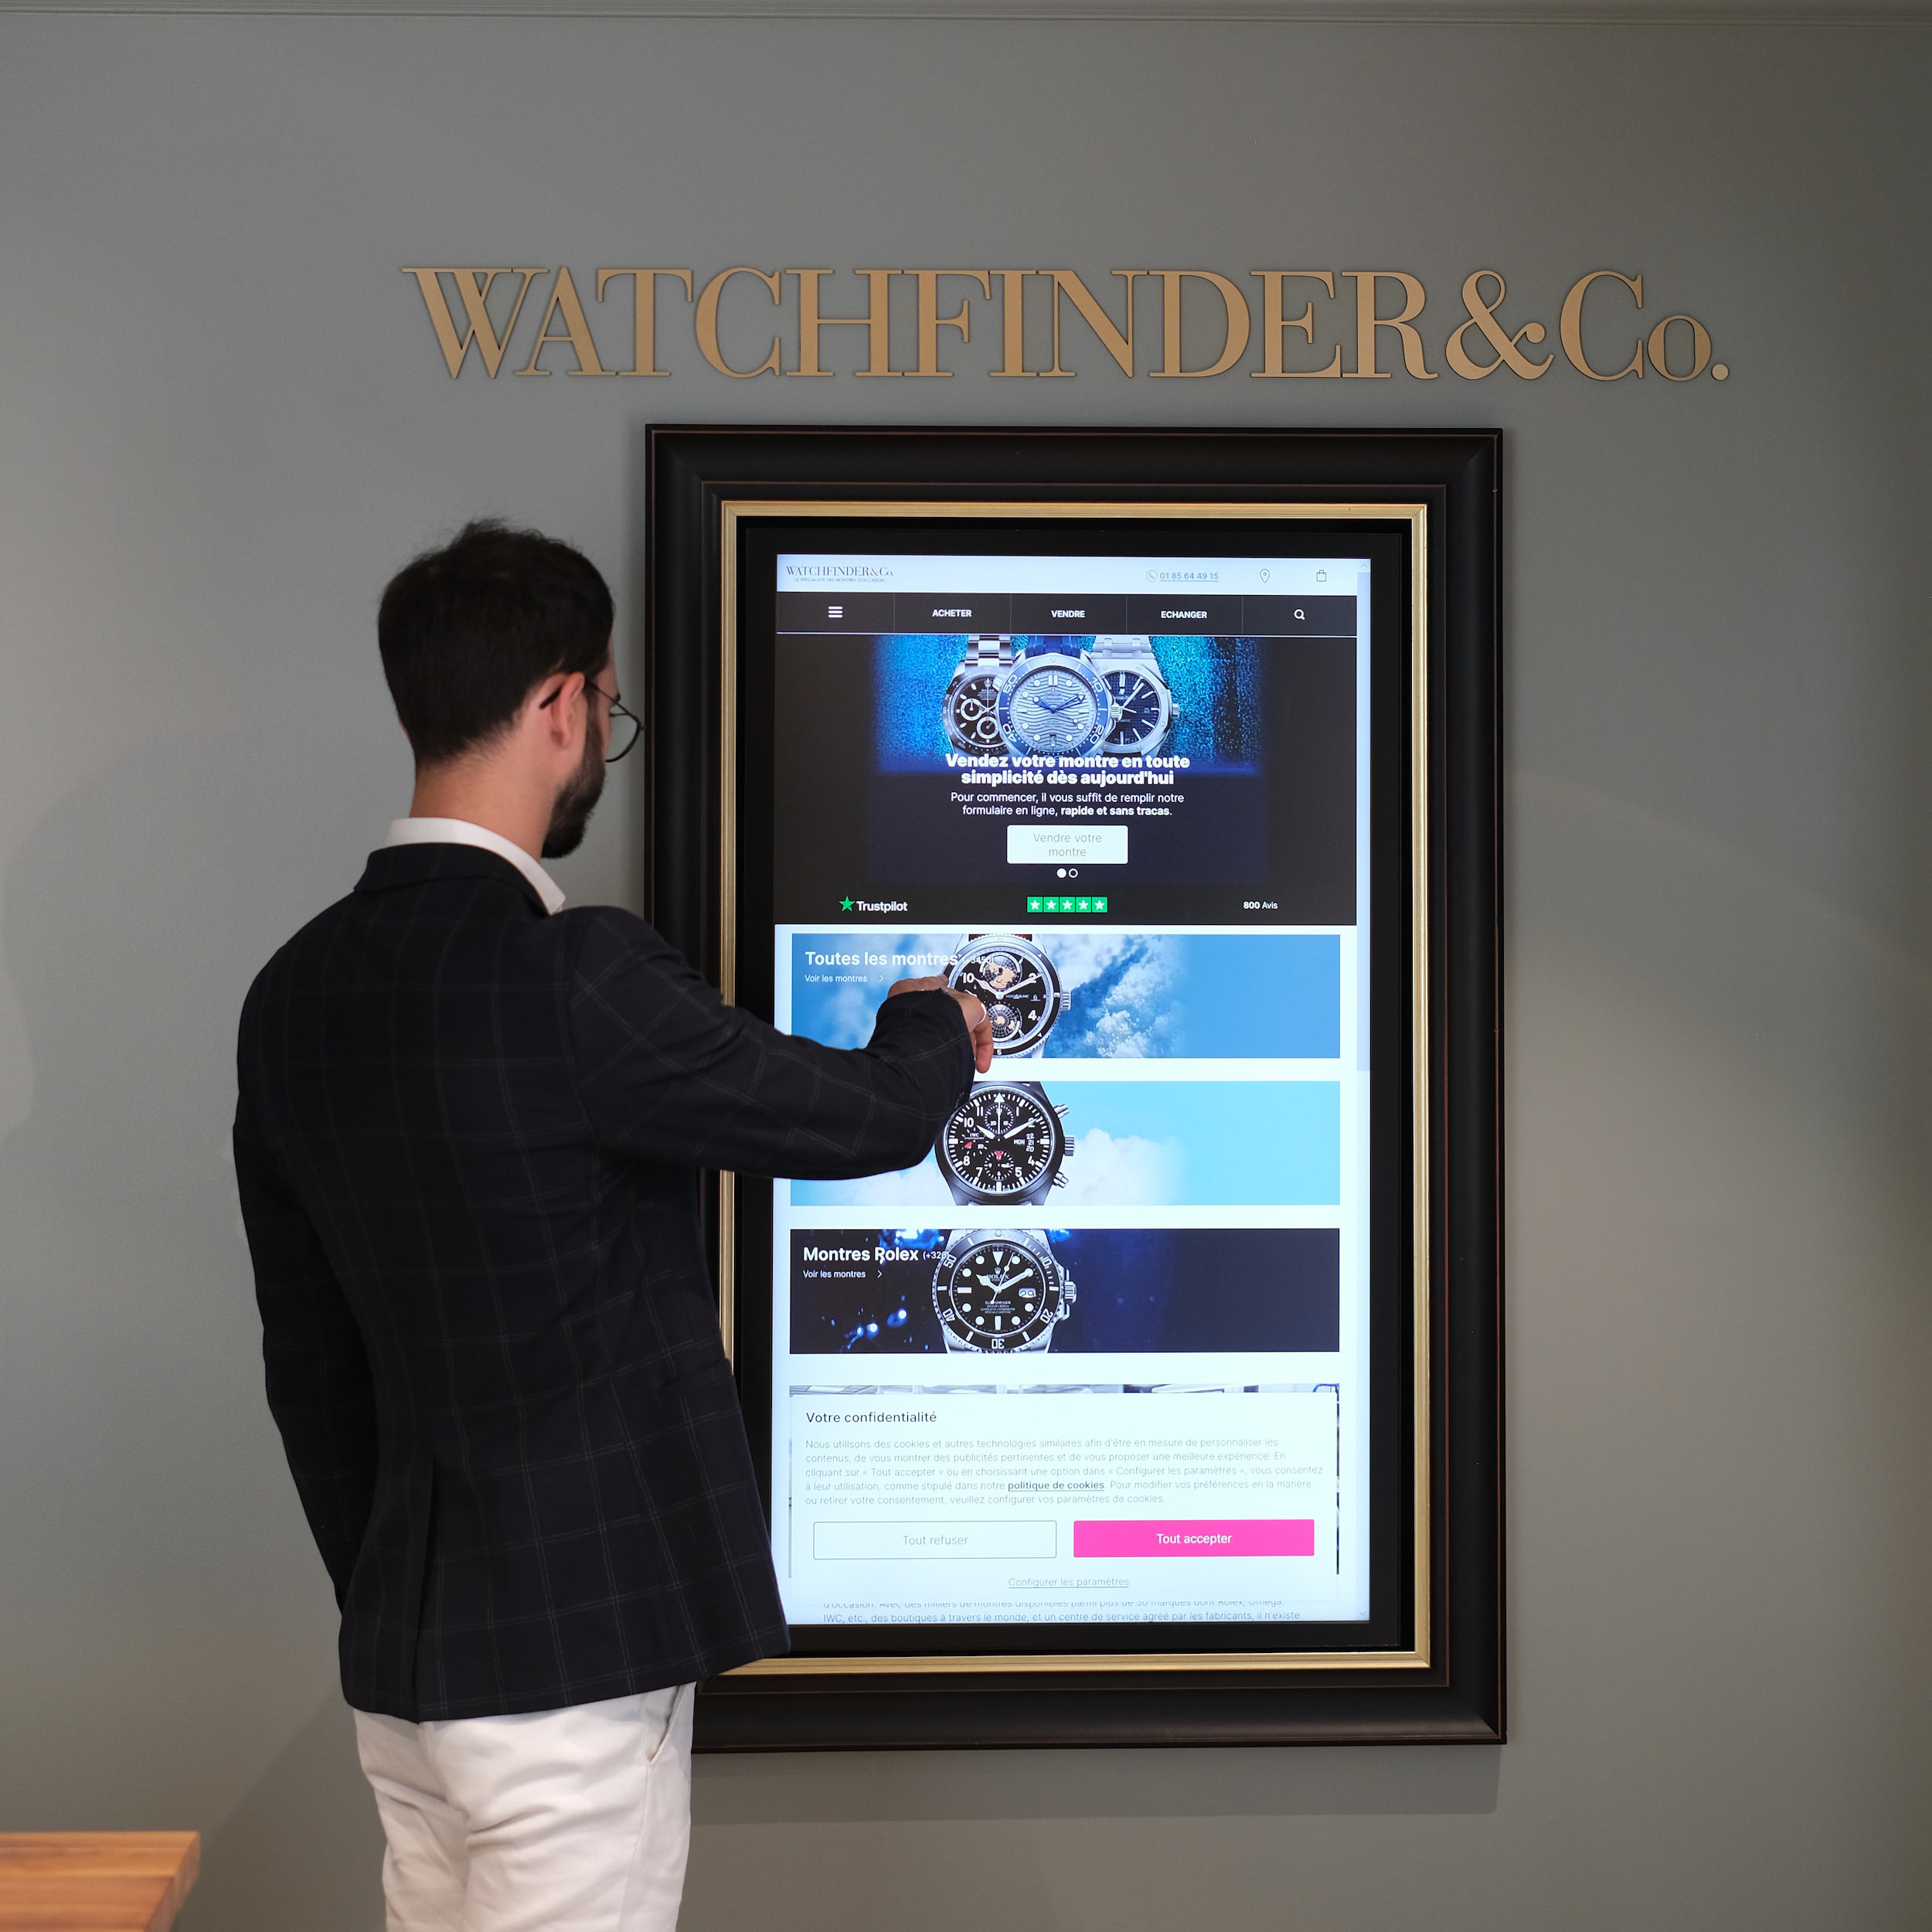 Boutique Watchfinder & co paris ecran tactile